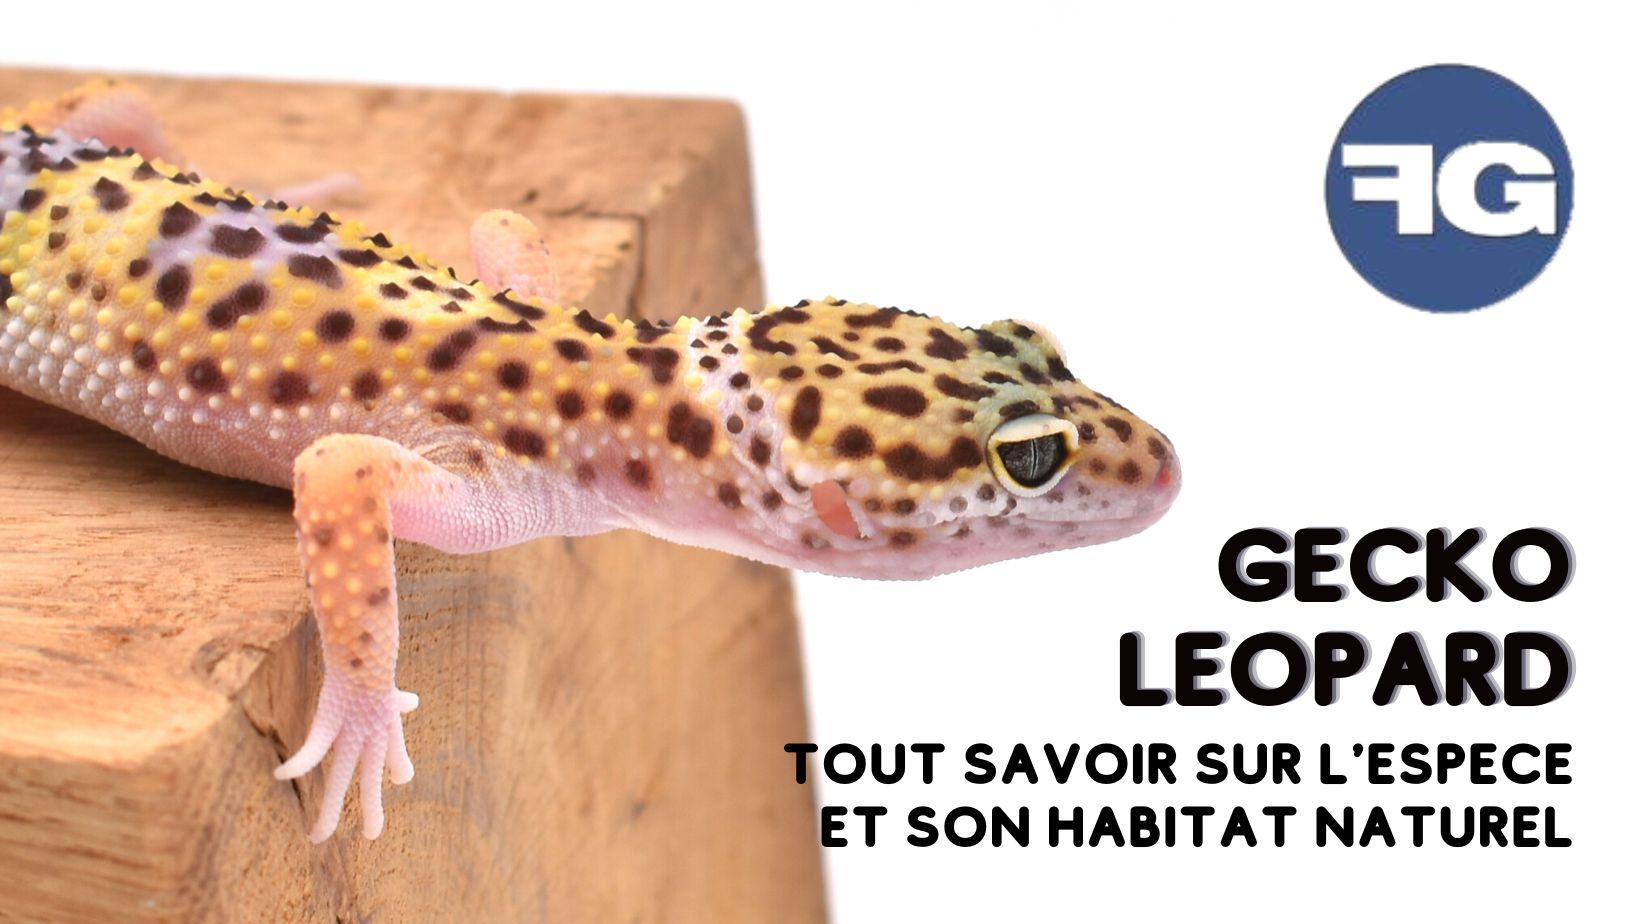 Tout savoir sur le gecko léopard et son habitat naturel